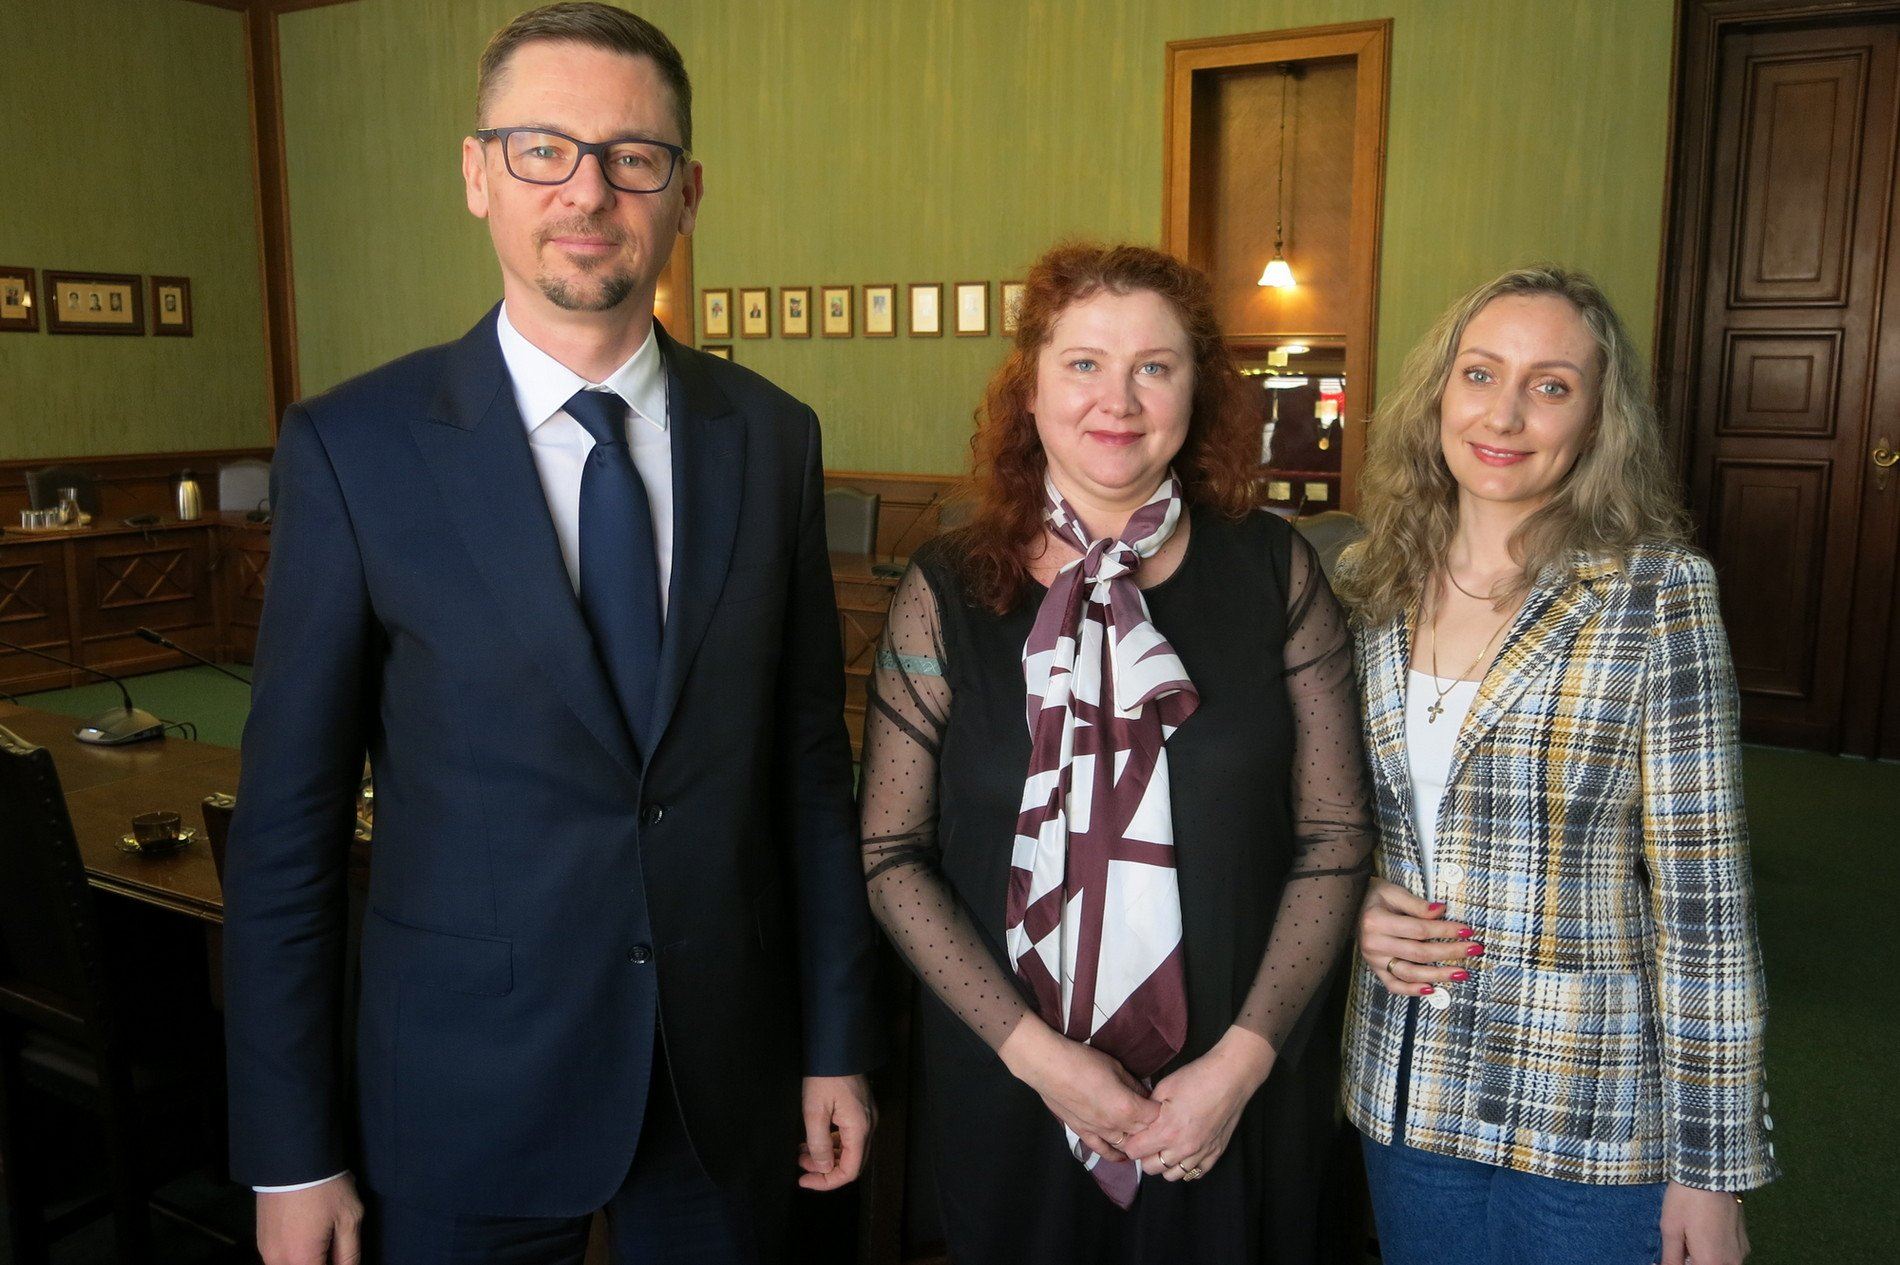  Od lewej: Sergiusz Kmiecik, przewodniczący Rady Miejskiej Wrocławia, Katarzyna Ostrowska, prezes Związku Polaków w Kazachstanie, oraz Małgorzata Thouard, ambasador Zgromadzenia Narodu Kazachstanu, www.wroclaw.pl